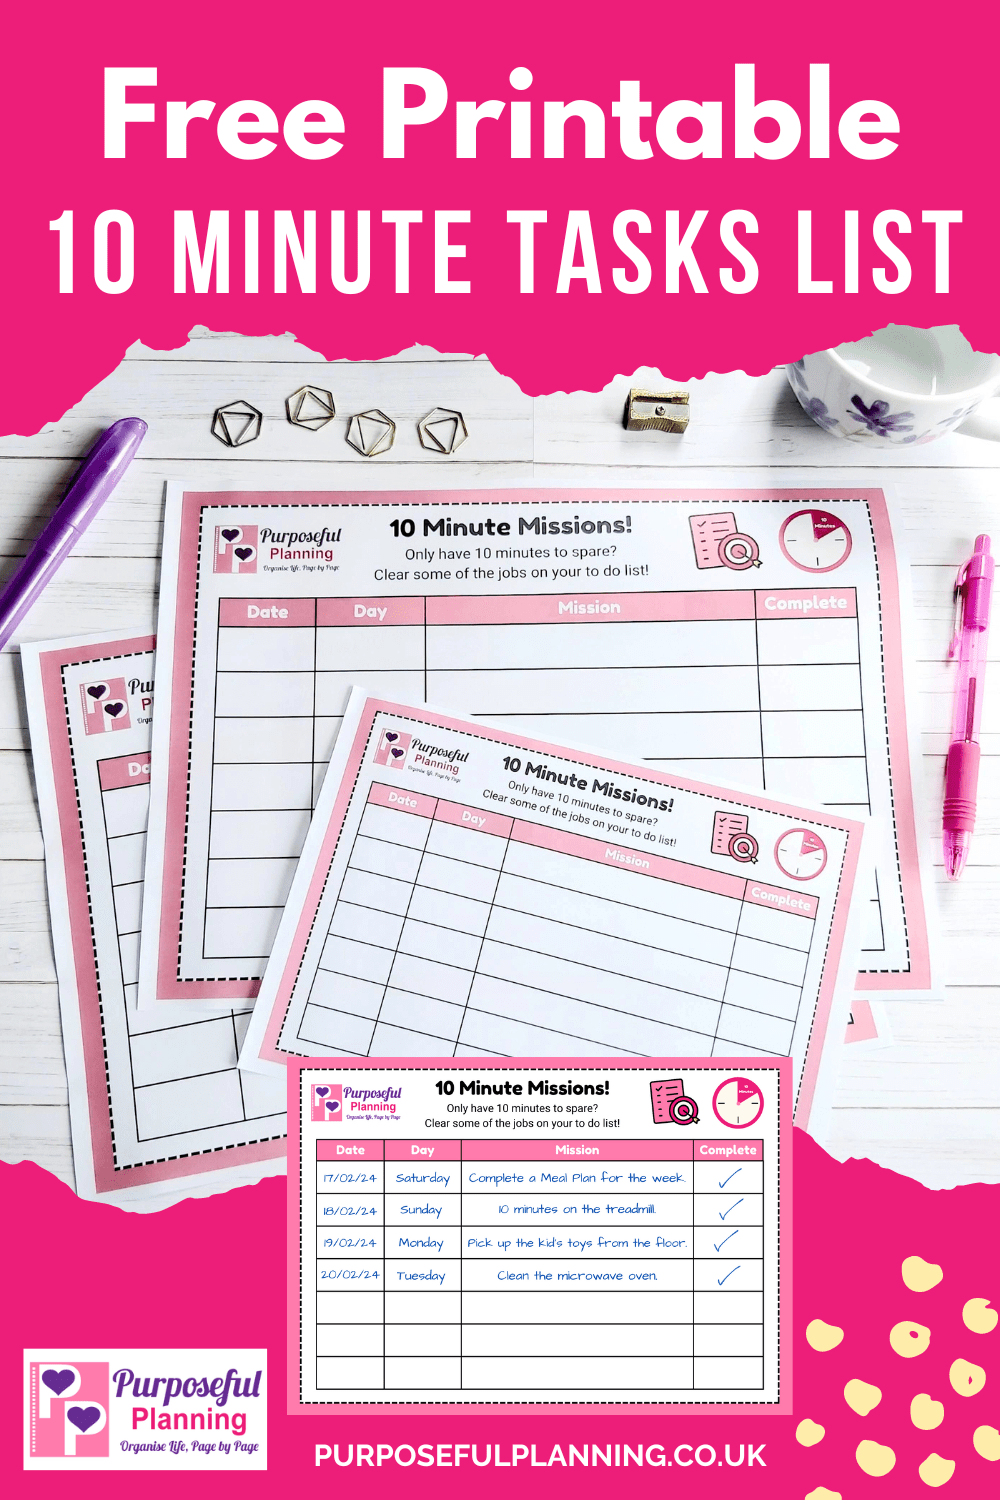 10 Minute Tasks List - Free Printable